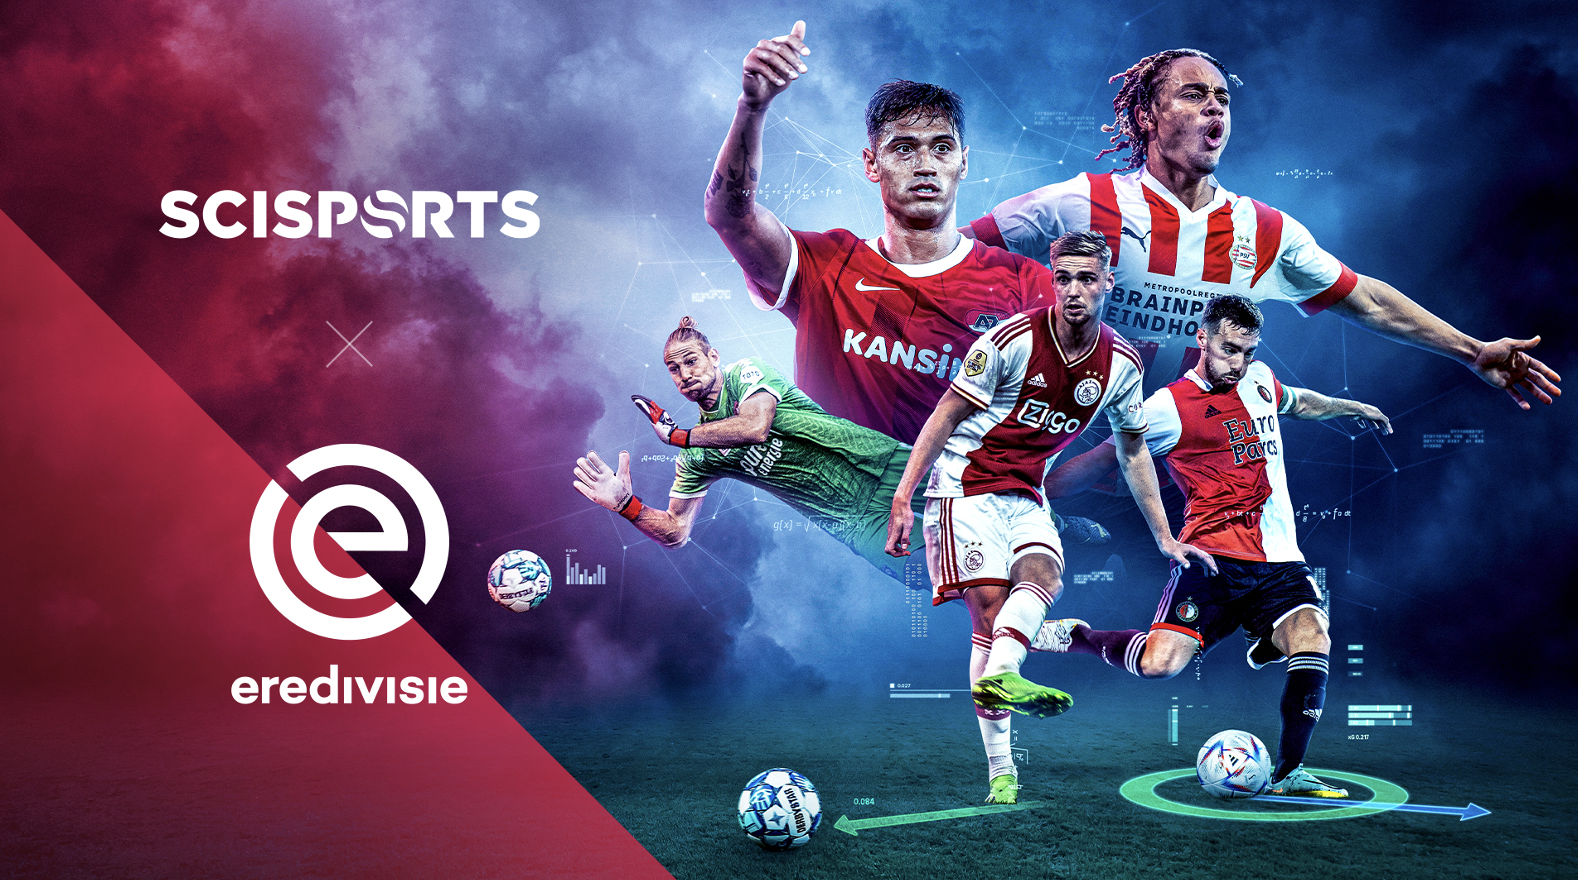 يوسع موقع Eredivisie صفقة تحليل أداء SciSports حتى عام 2025